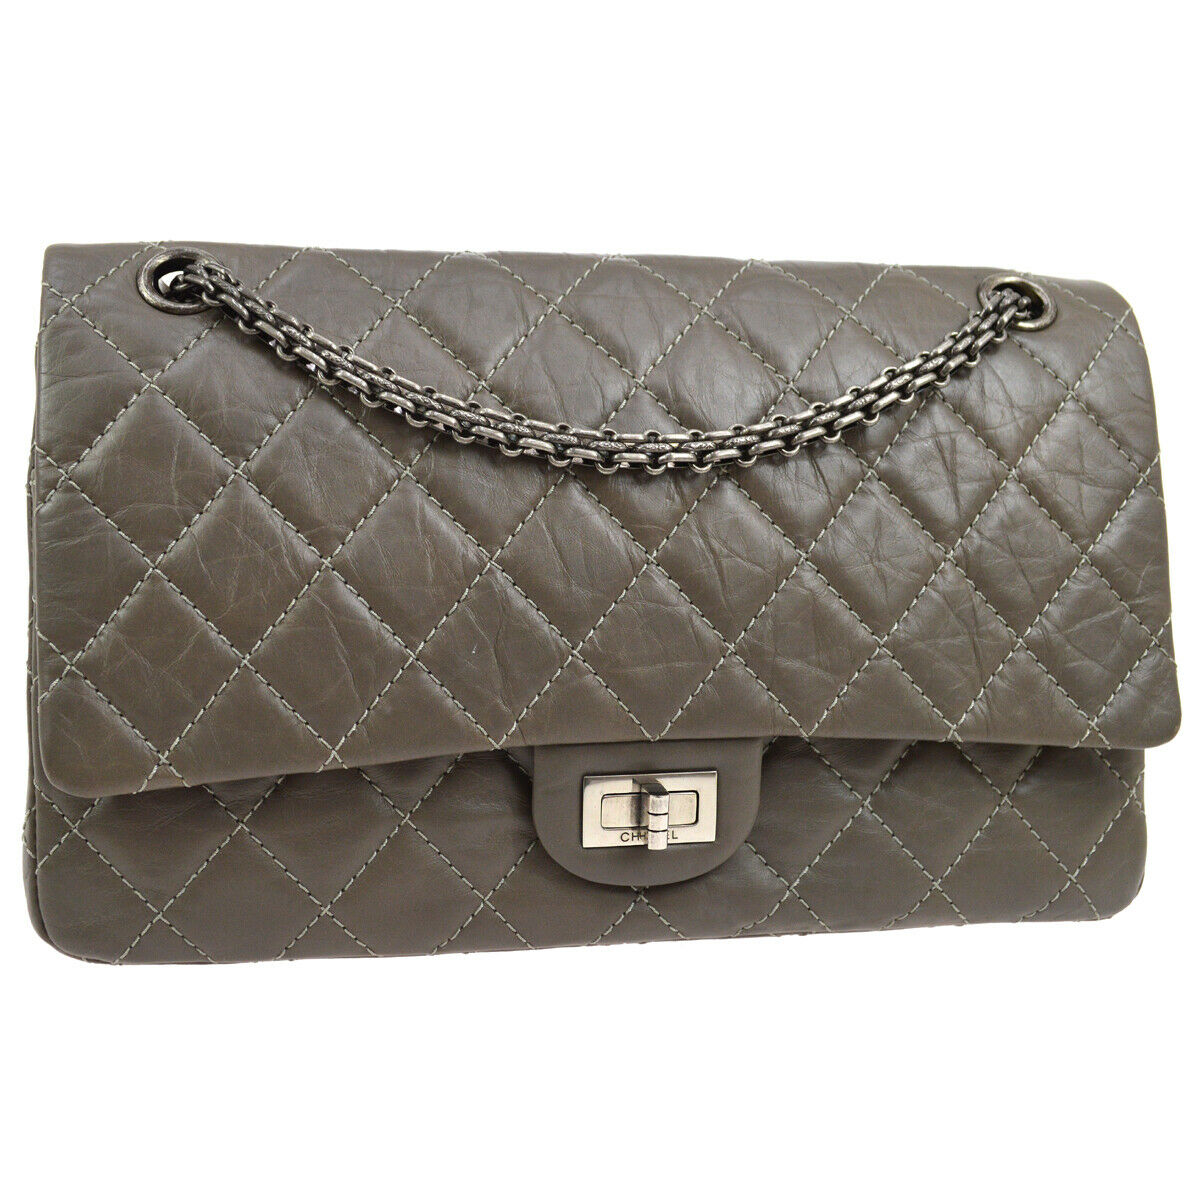 Bag comprar primero si quieres Top 3 las bolsas de Chanel más emblemáticas | Bagaholic